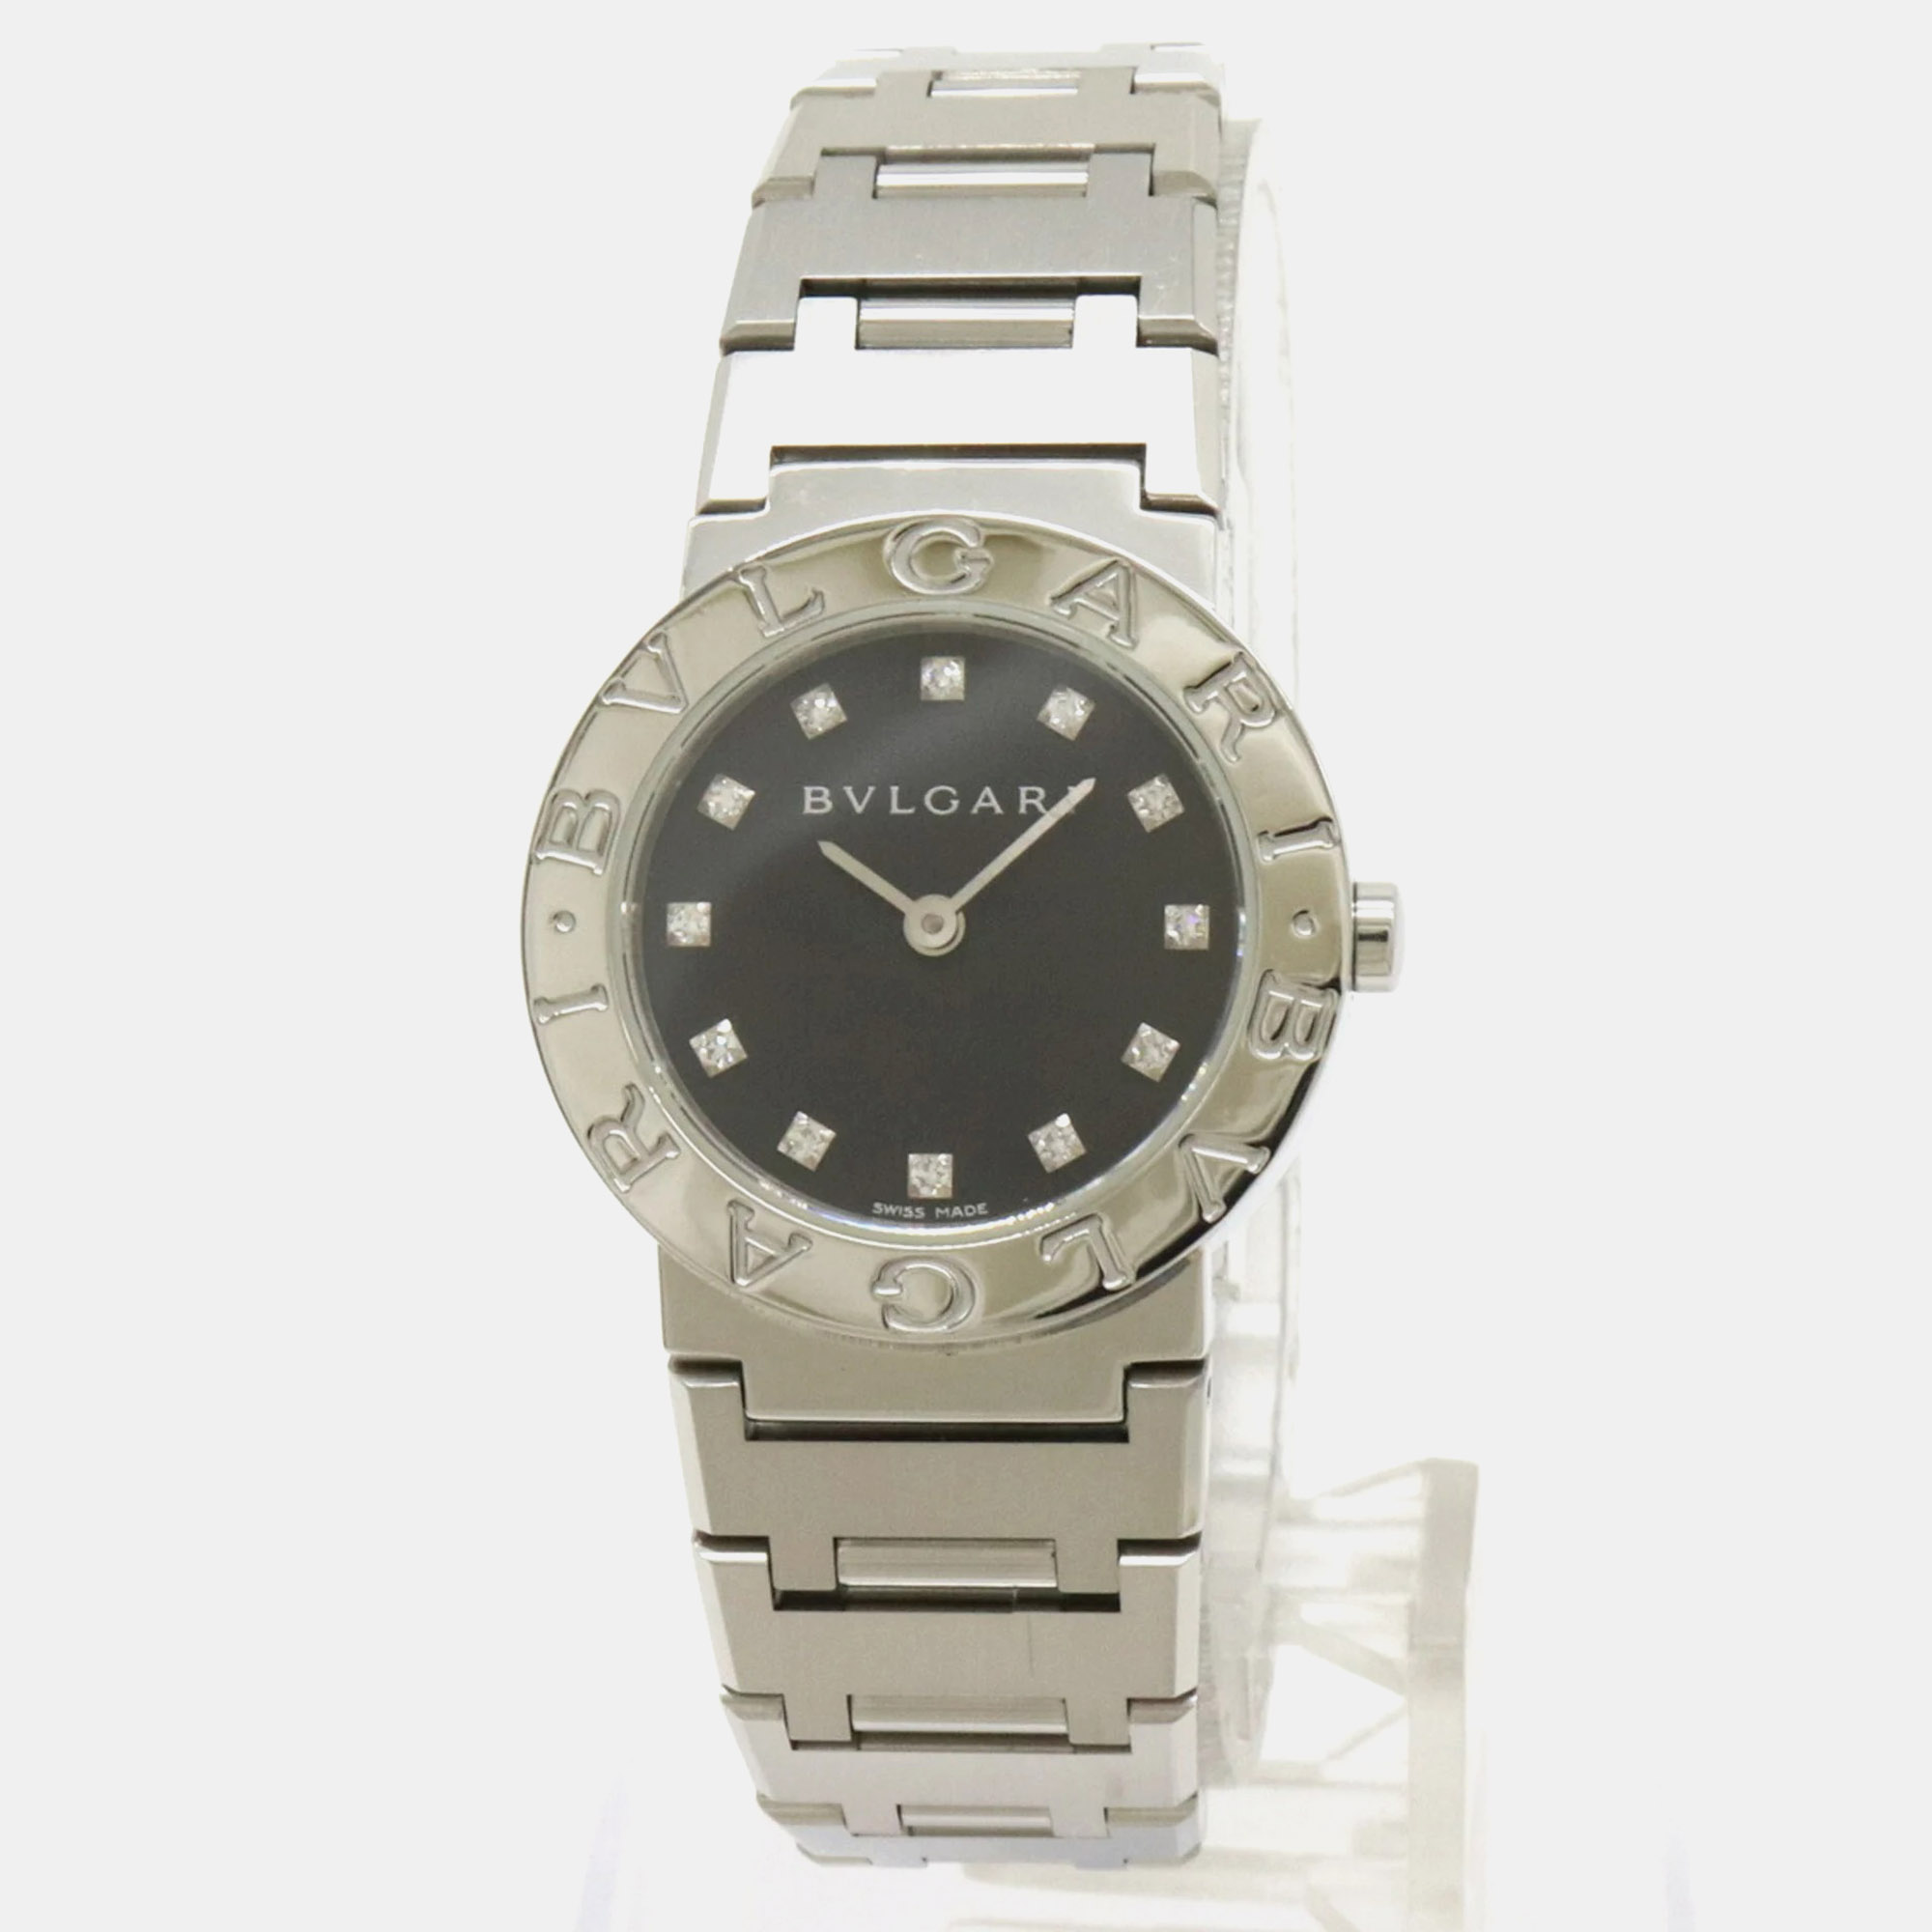 

Bvlgari Black Stainless Steel Bvlgari Bvlgari Quartz Women's Wristwatch 32 mm